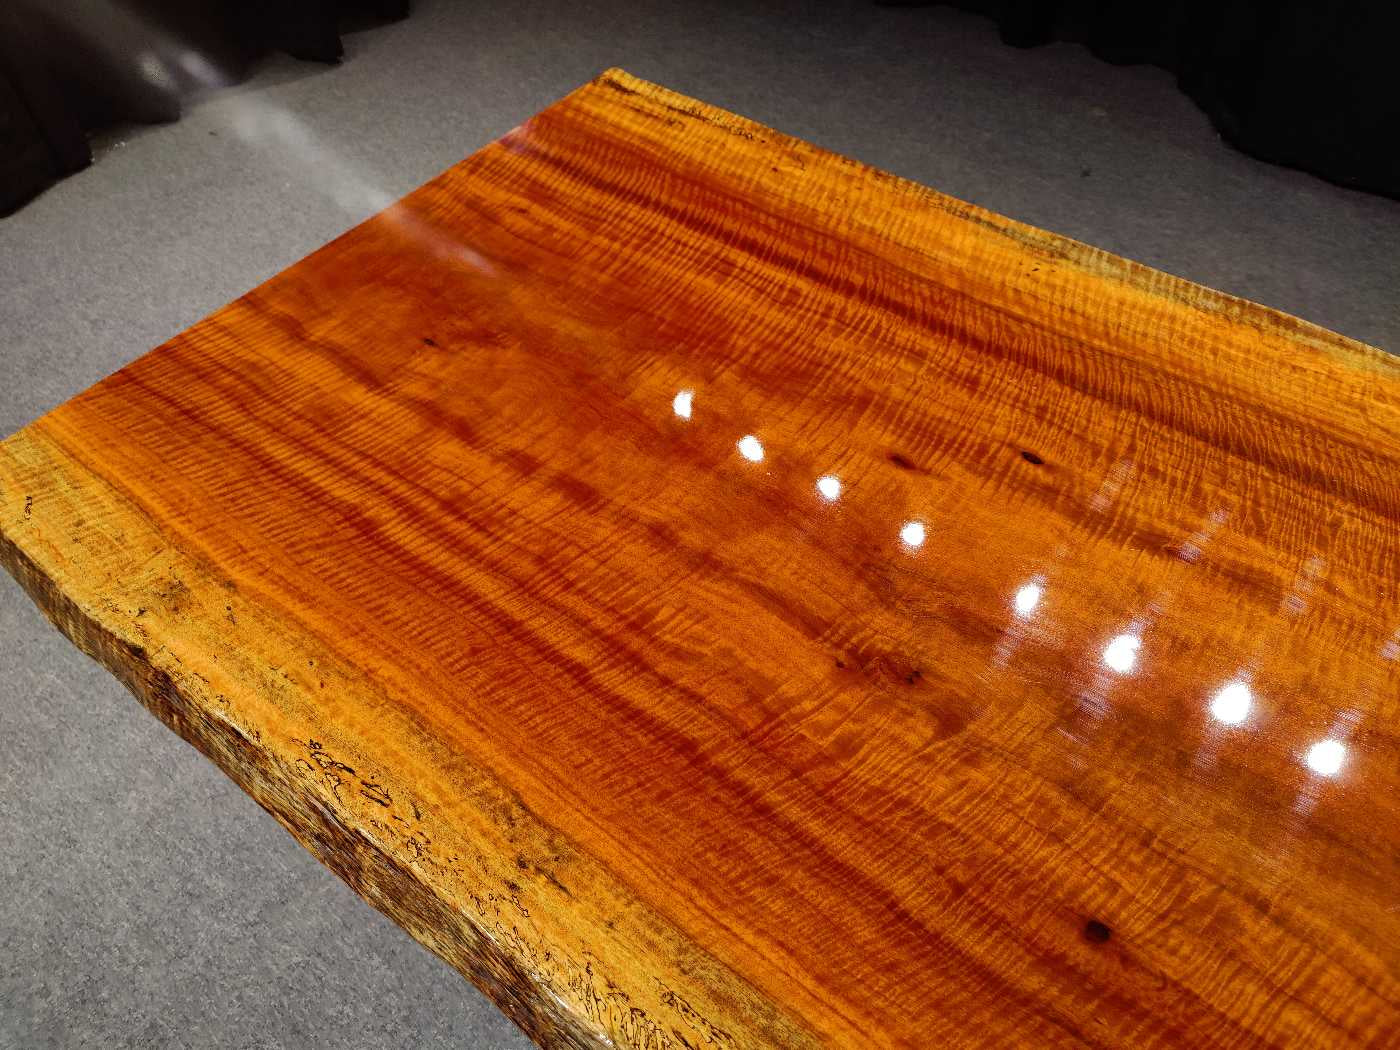 زامبيا لوح طاولة من الخشب الصلب، طاولة لوح حافة حية من خشب الكوبال الروديسي